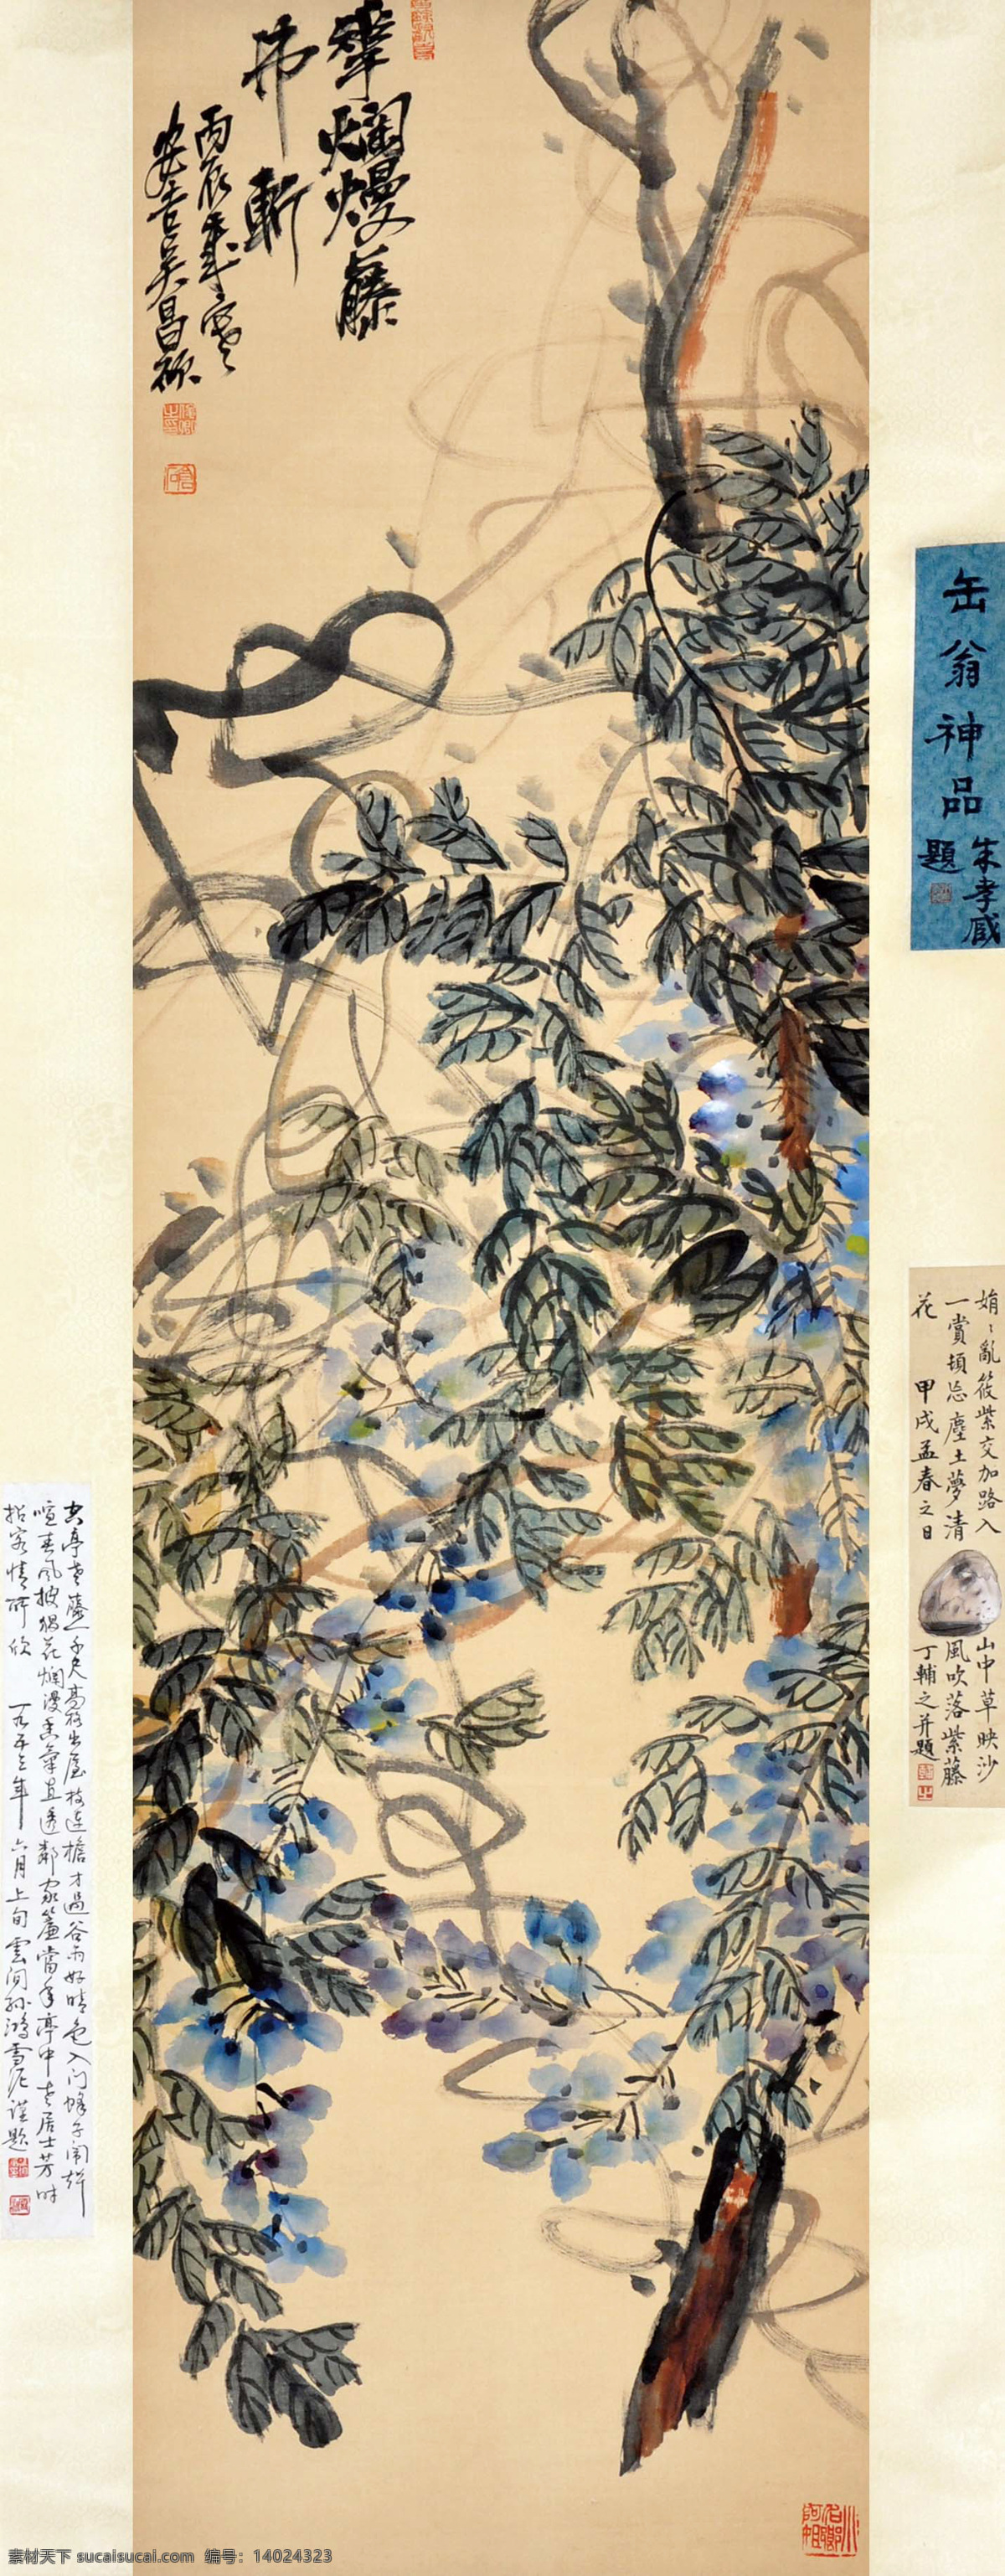 吴昌硕 紫藤 国画 中国画 传统画 名家 绘画 艺术 文化艺术 绘画书法